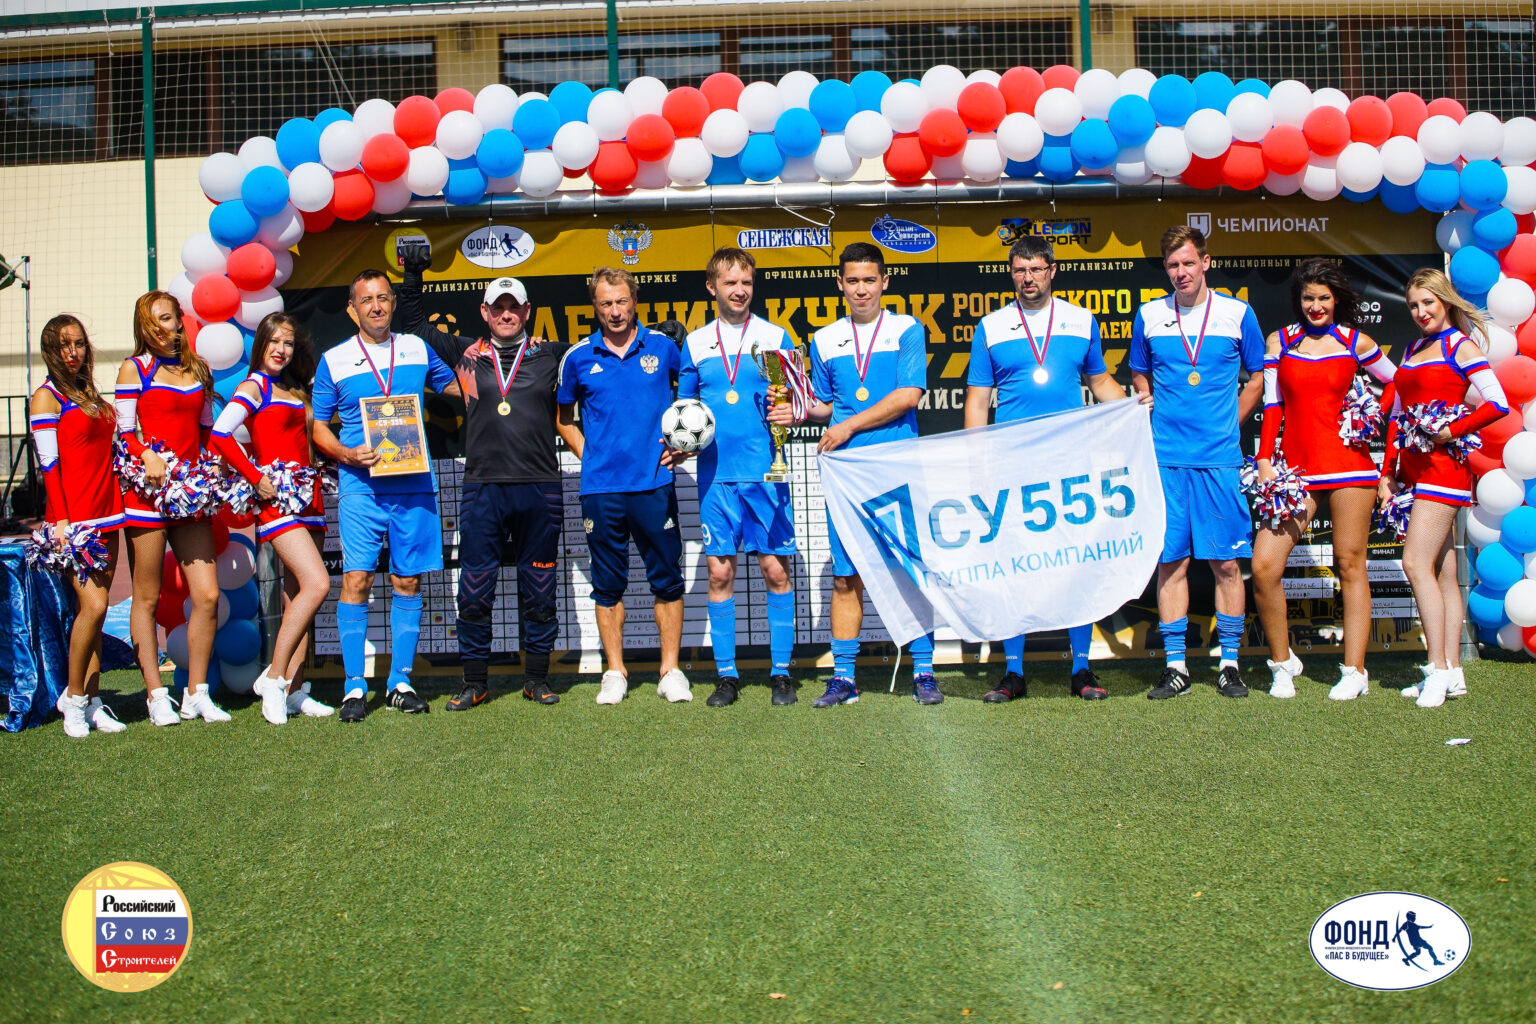  Футбольная команда ООО ГК «СУ-555» заняла первое место в летнем Кубке Российского союза строителей в серебряном плей-офф